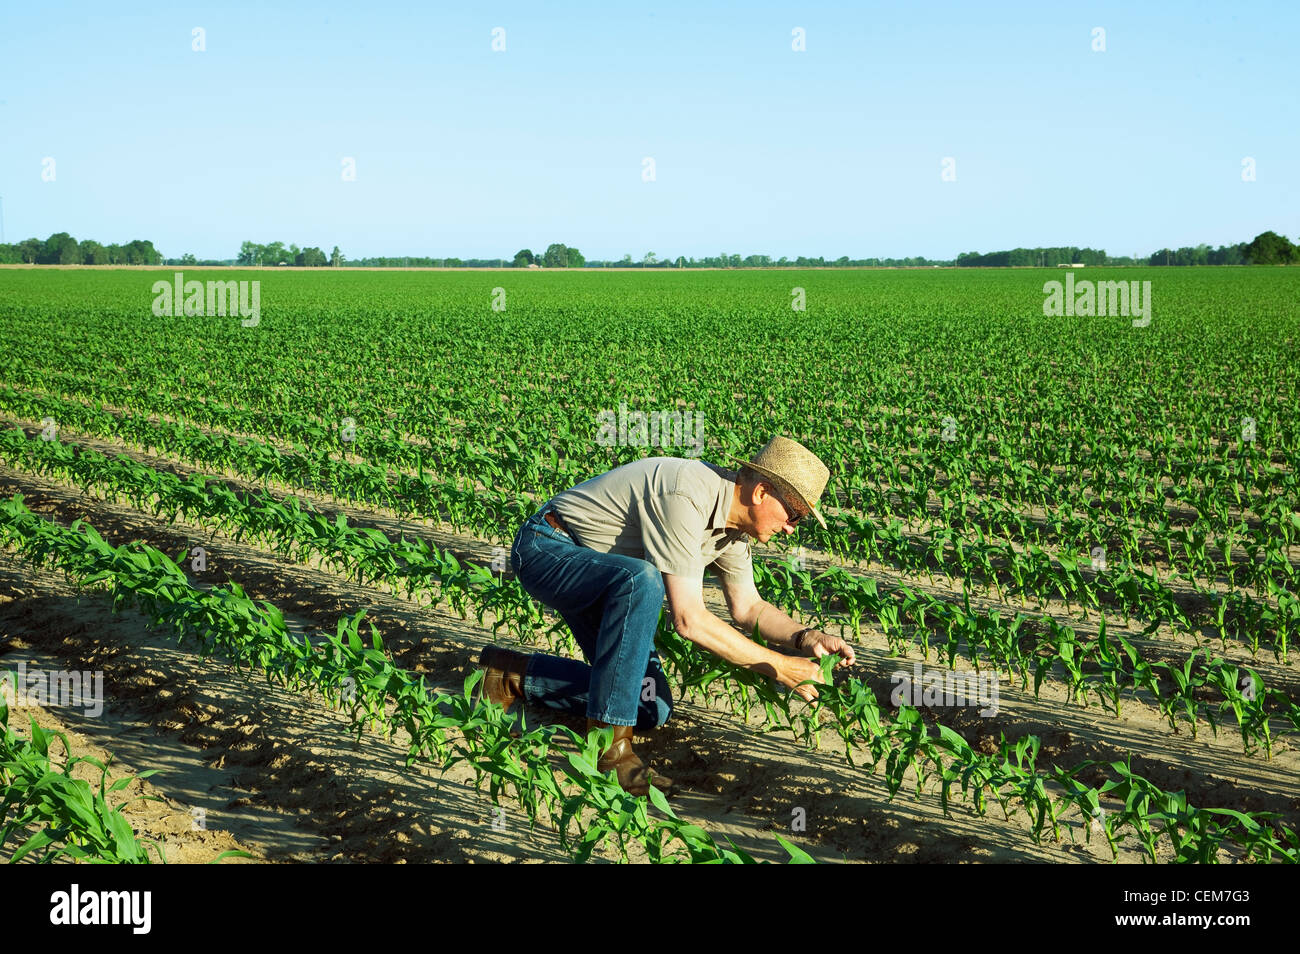 Agricoltura - un agricoltore (coltivatore) esamina la rapida crescita del grano di piante di mais a 6 stadio fogliare / vicino a Inghilterra, Arkansas, Stati Uniti d'America. Foto Stock